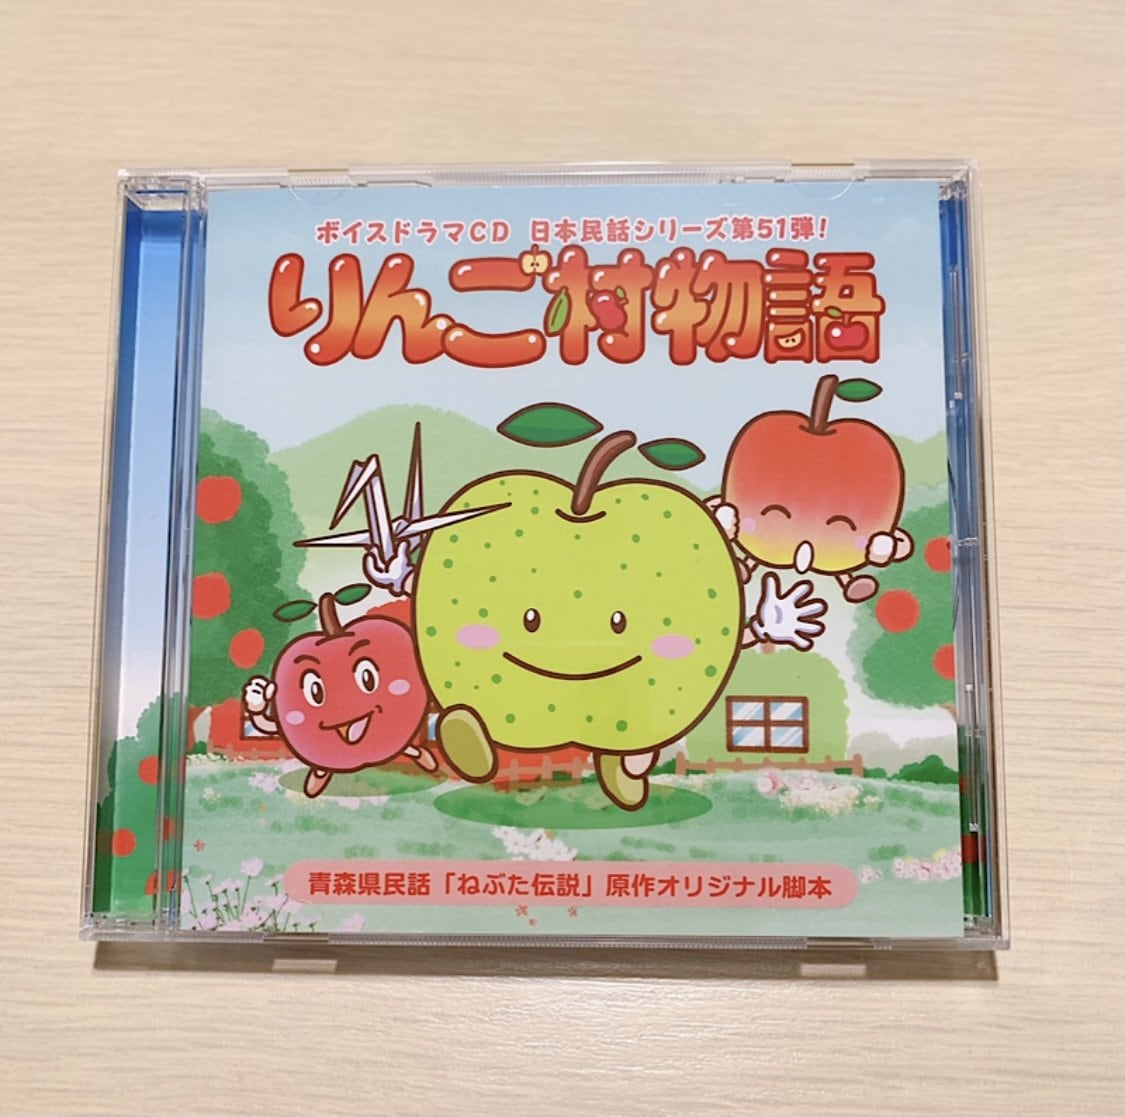 【1枚購入用】ボイスドラマCD日本民話シリーズ「りんご村物語」